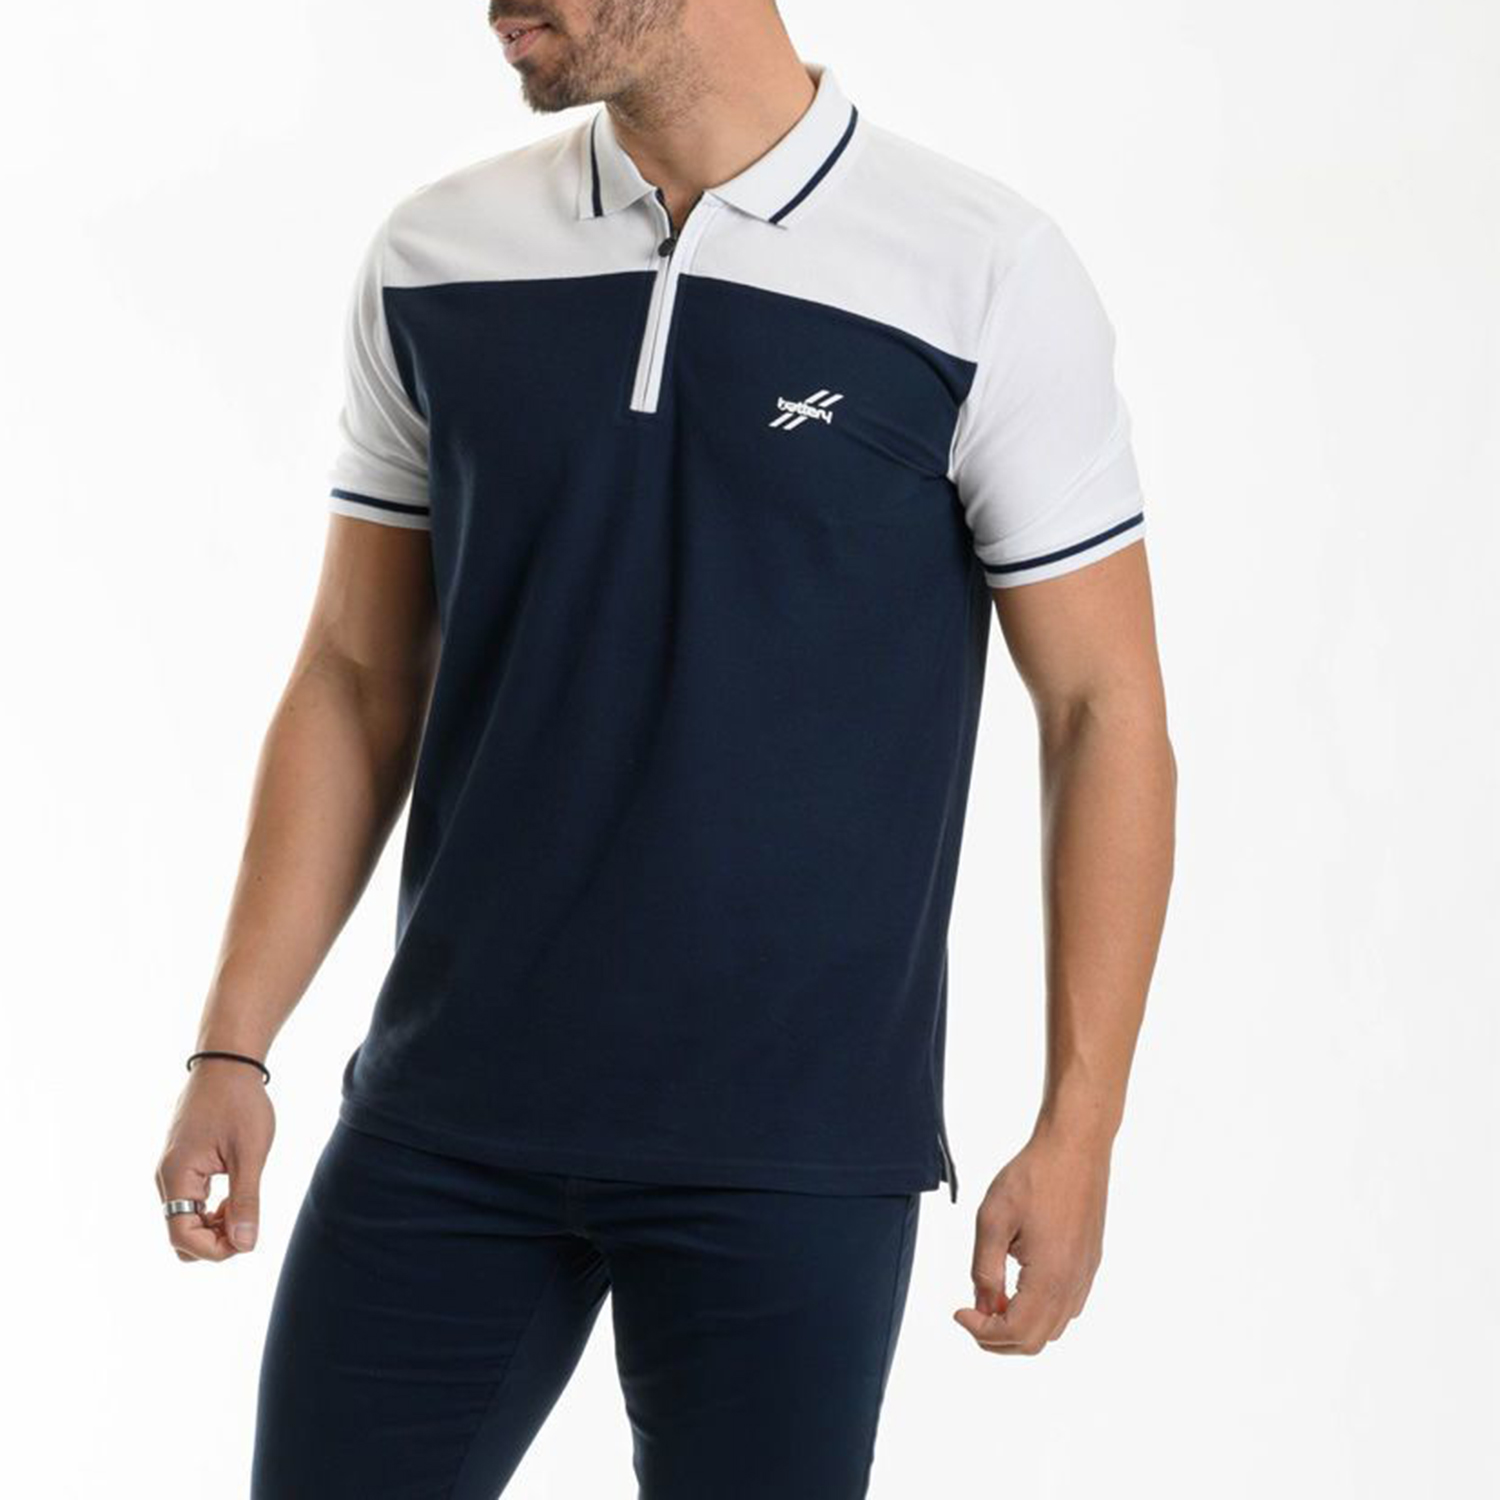 Ανδρικά/Ρούχα/Μπλούζες/Πόλο BATTERY - Ανδρική polo μπλούζα BATTERY μπλε λευκή